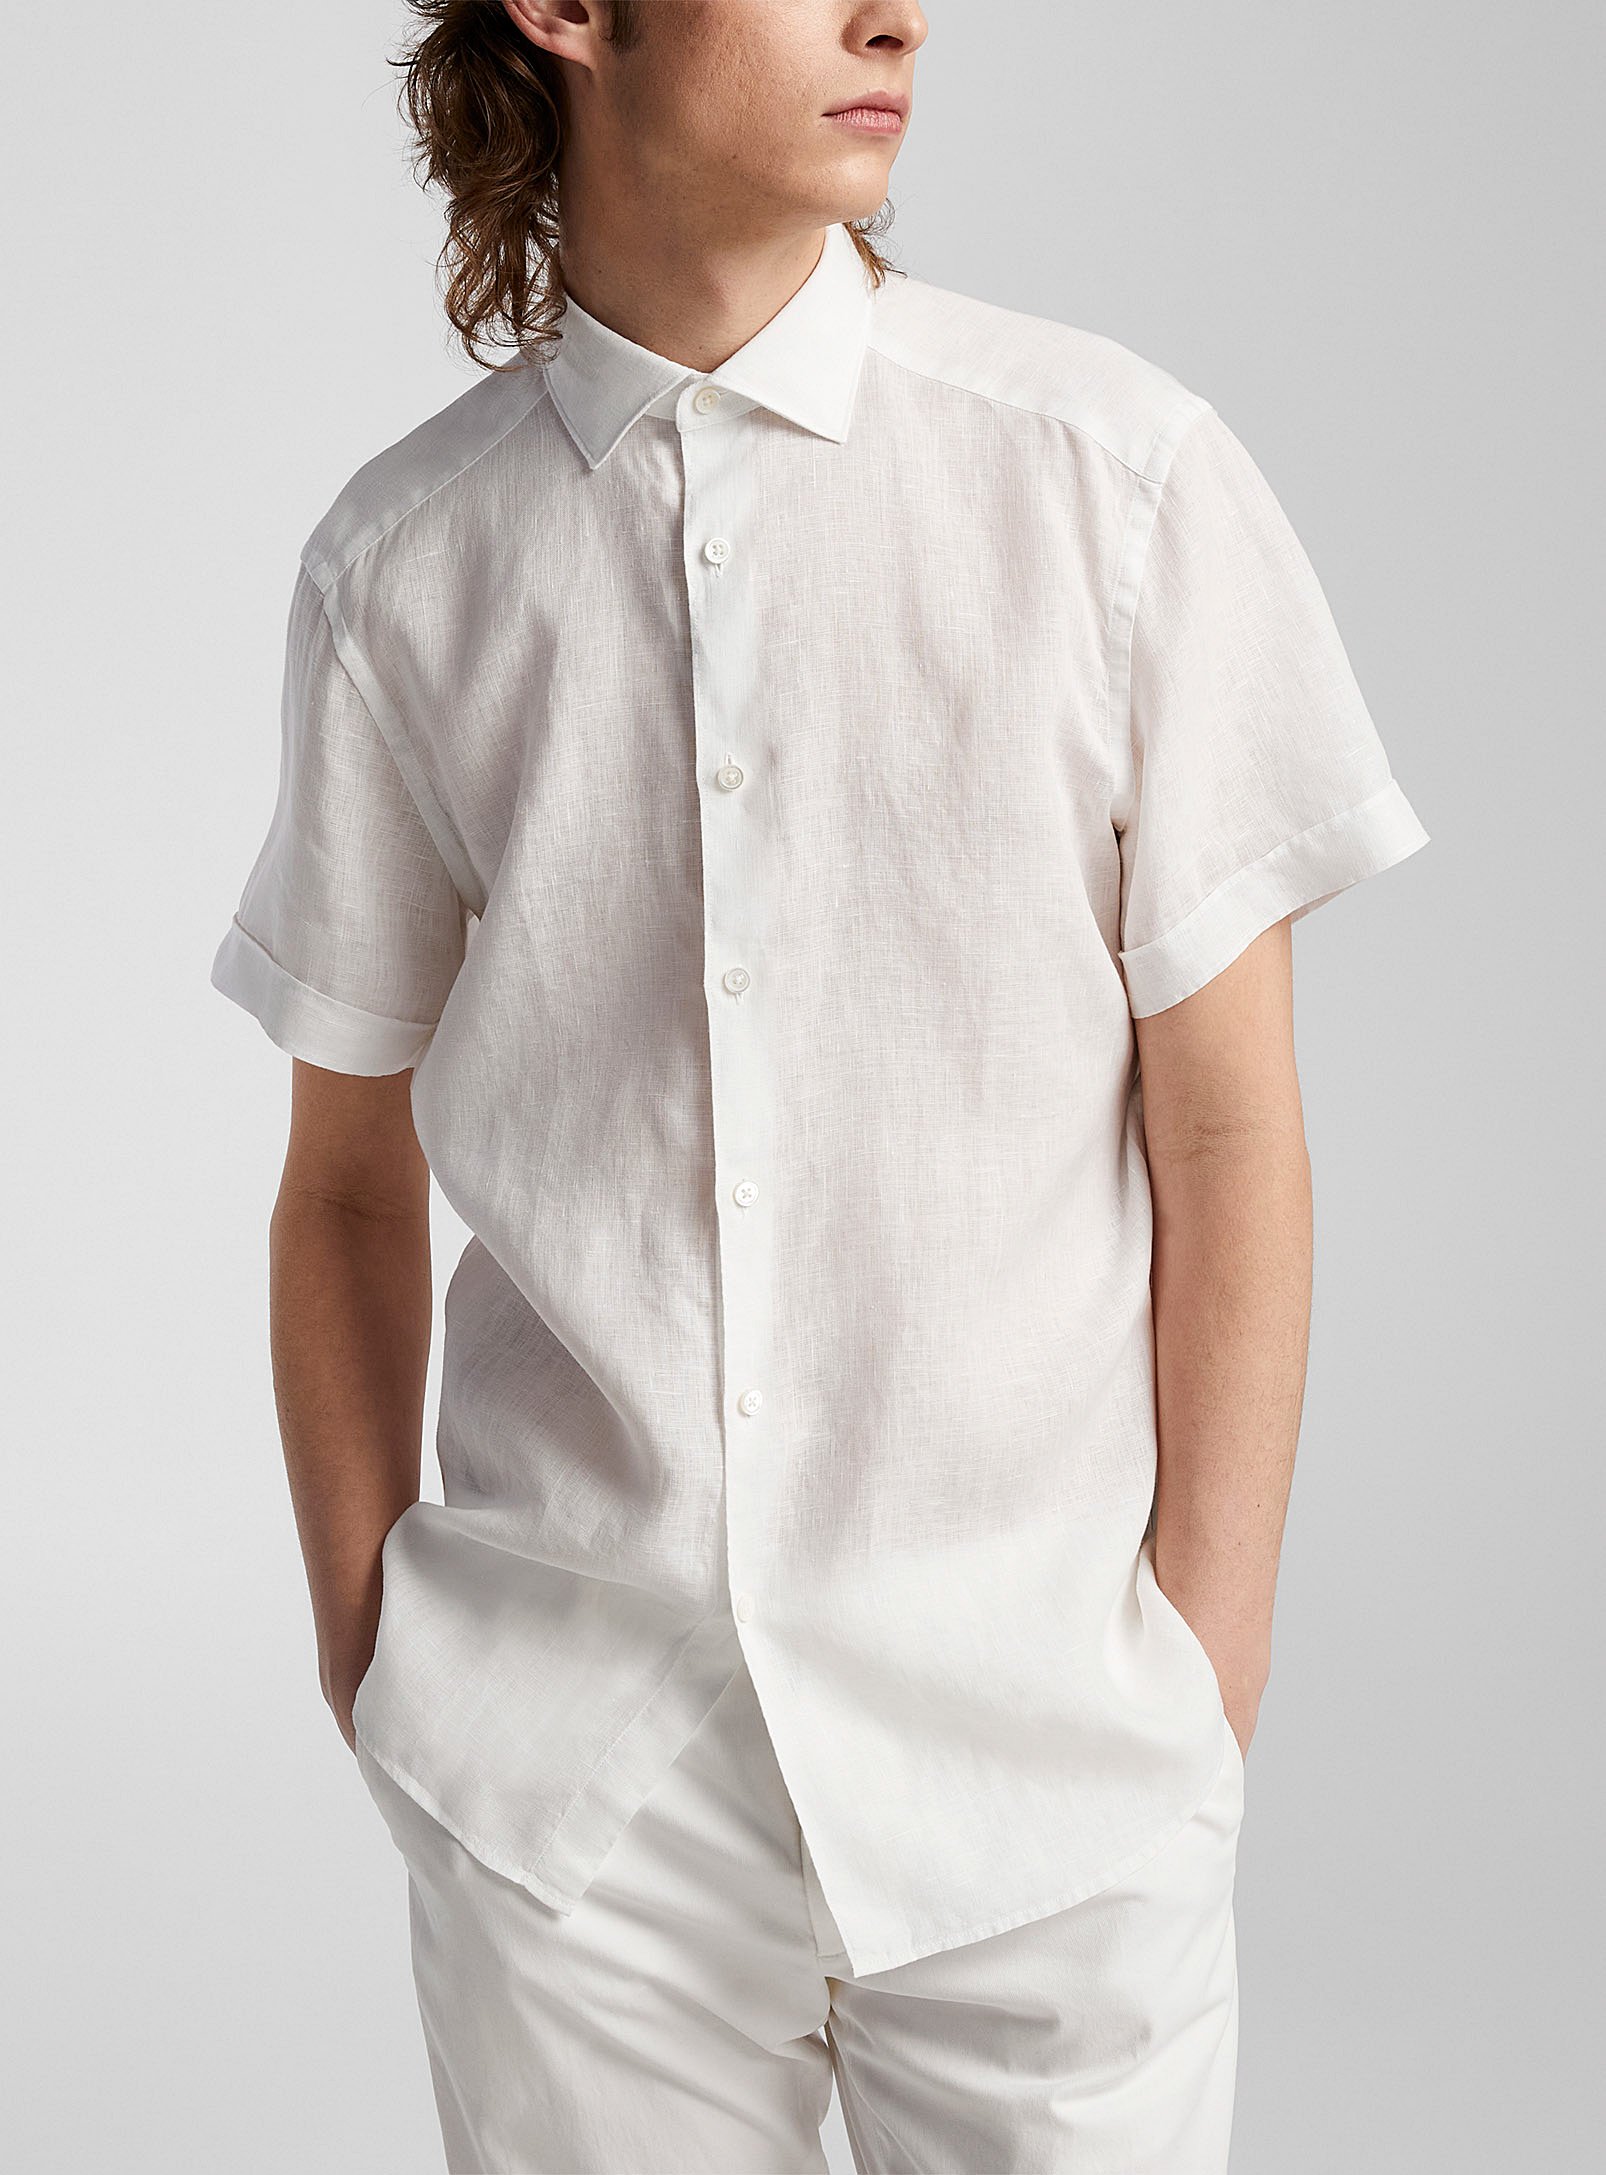 Zegna - La chemise pur lin manches courtes